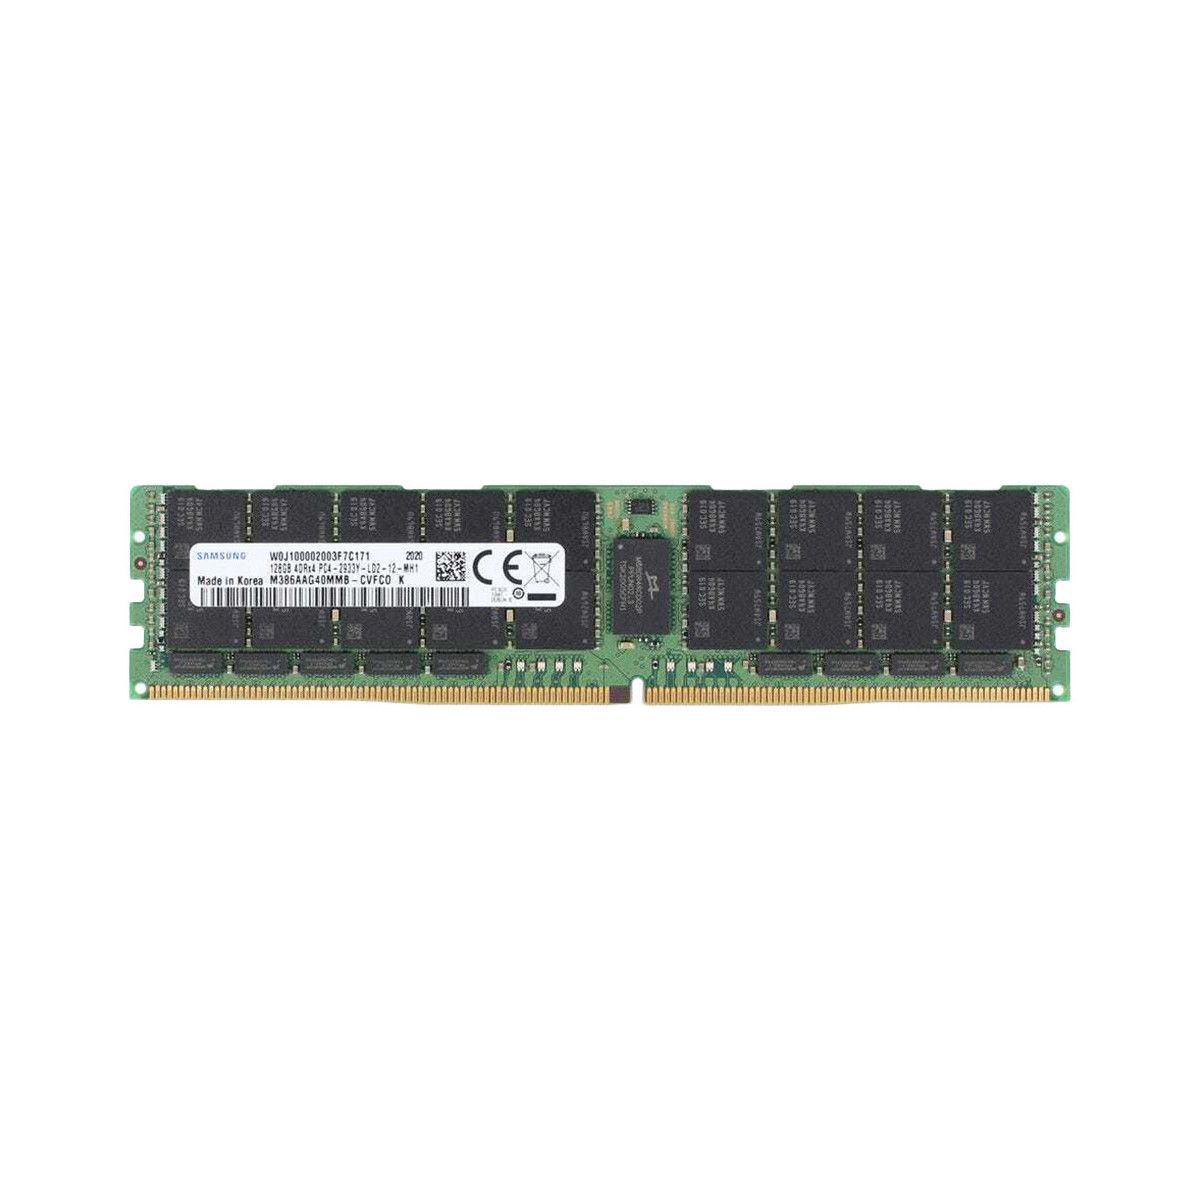 P00928-B21-MS - Memstar 1x 128GB DDR4-2933 LRDIMM PC4-23466U-L - Mem-star compatibel OEM geheugen 1 - Memstar 